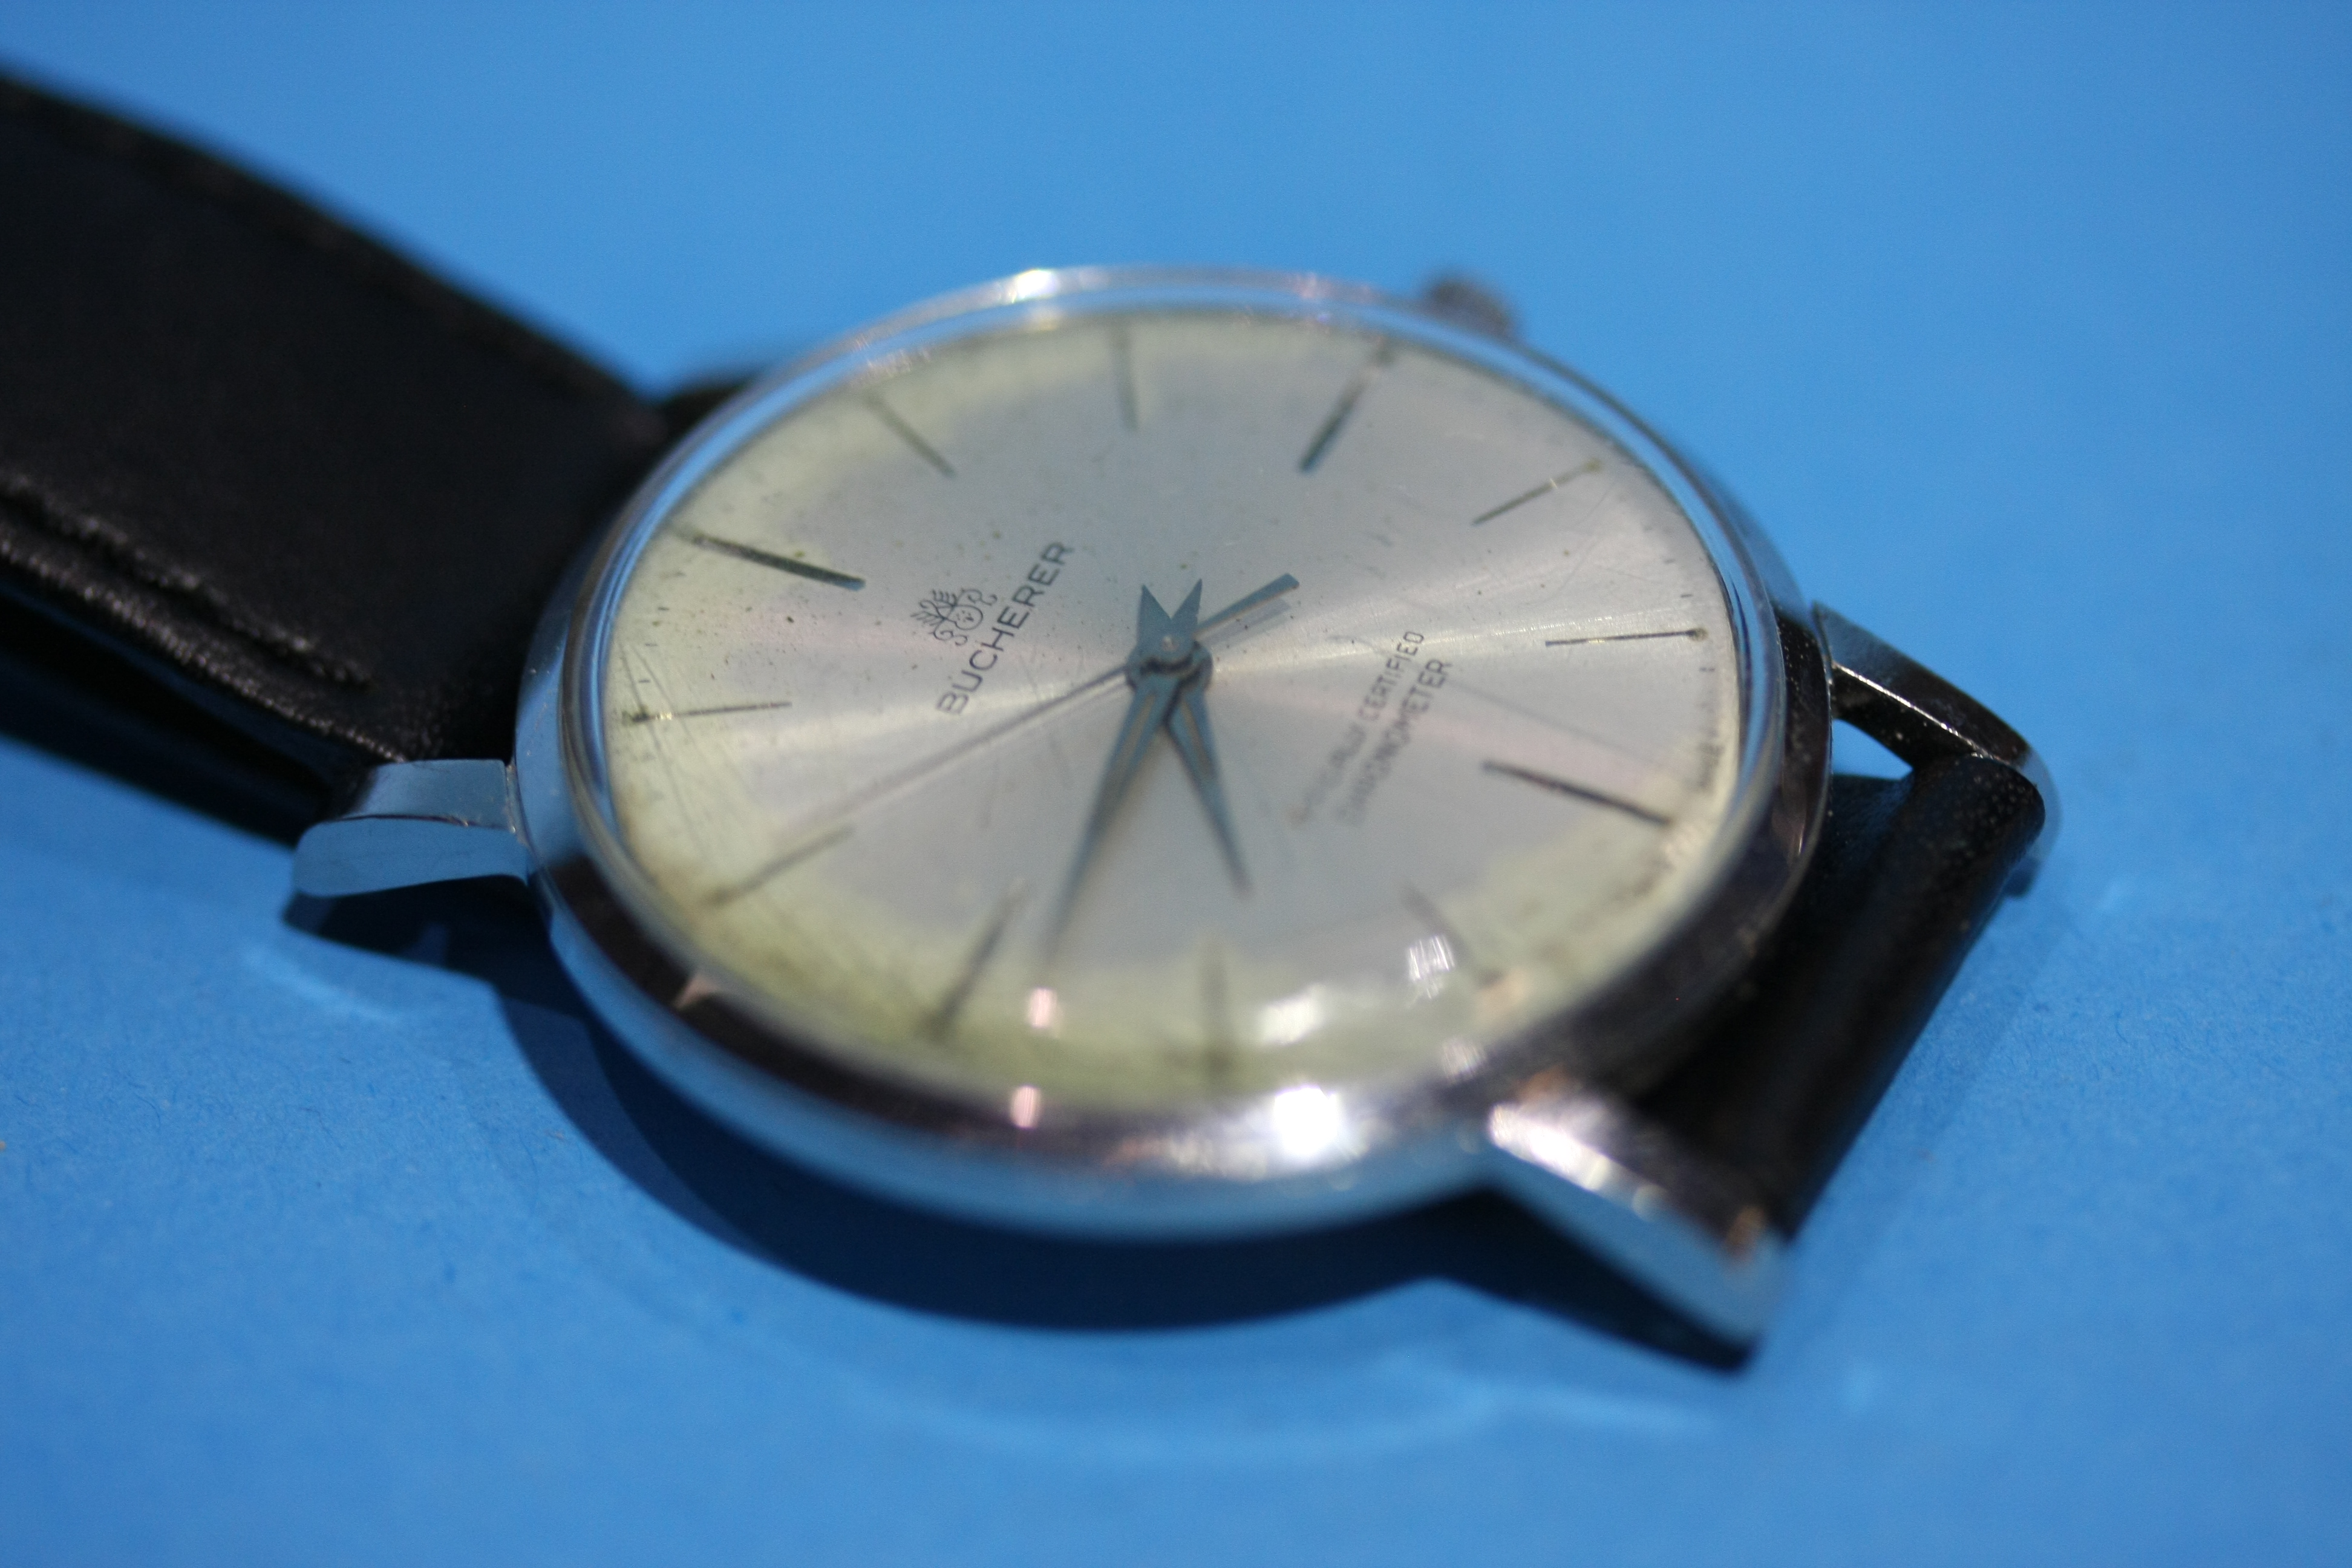 A Gents stainless steel Bucherer wristwatch.